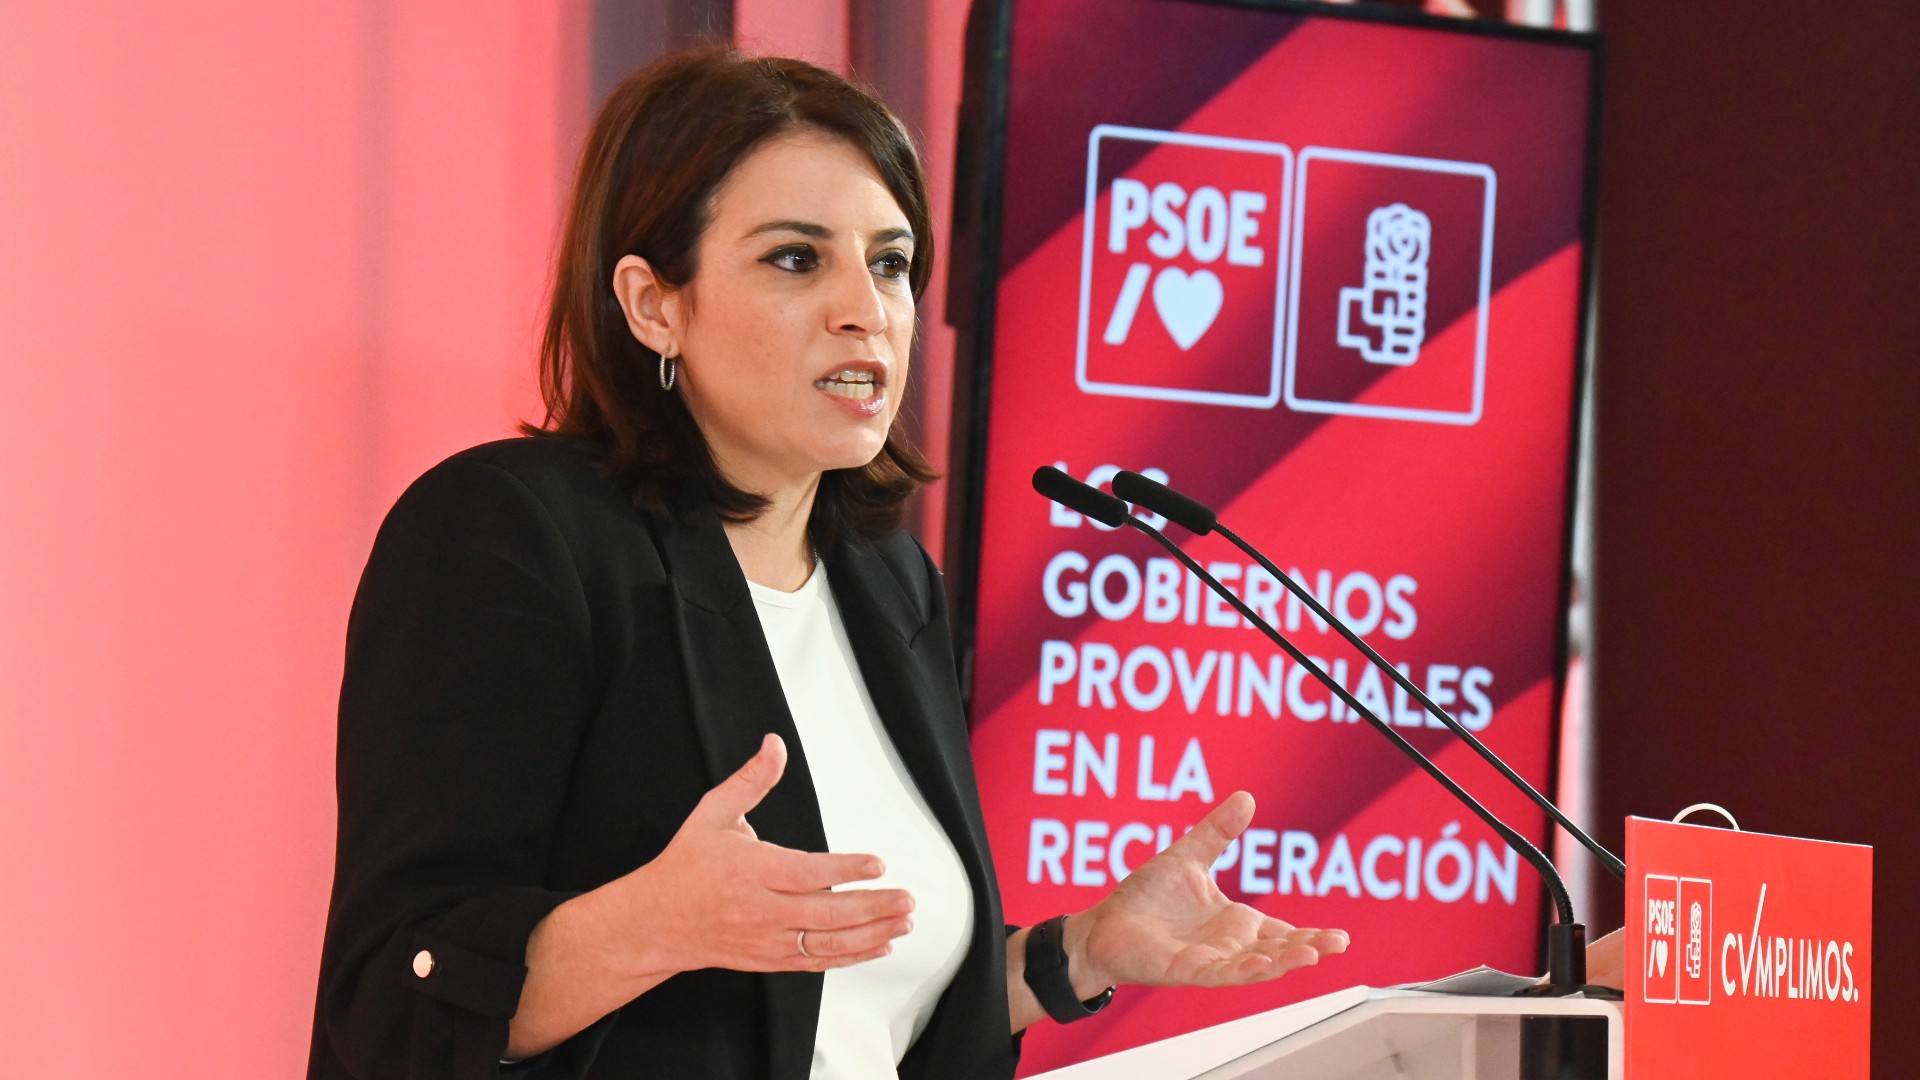 Ir al Video PSOE y Podemos critican el cambio de liderazgo en el PP: "Feijóo ha elegido gobernar con Vox"